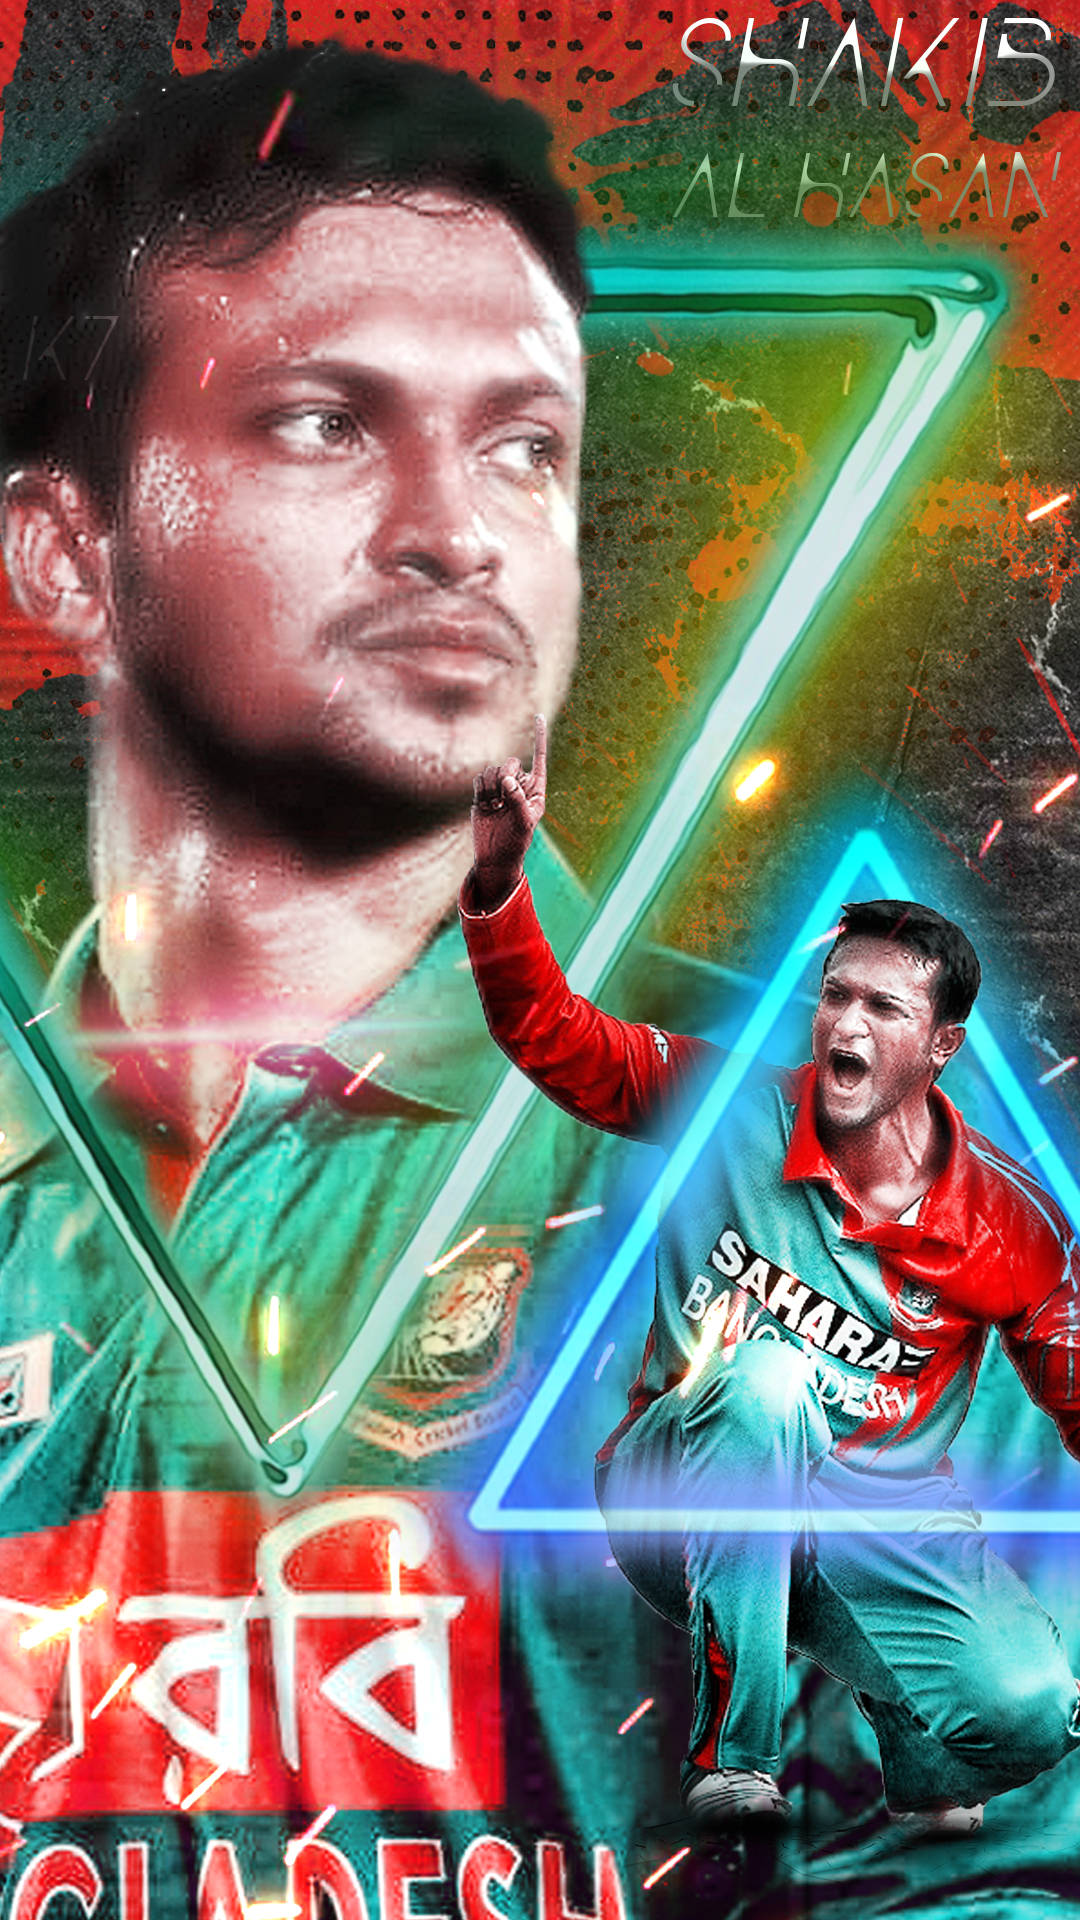 Udtryk Din Kærlighed Til Bangladesh Cricket Team Med Dette Unikke Billede Wallpaper